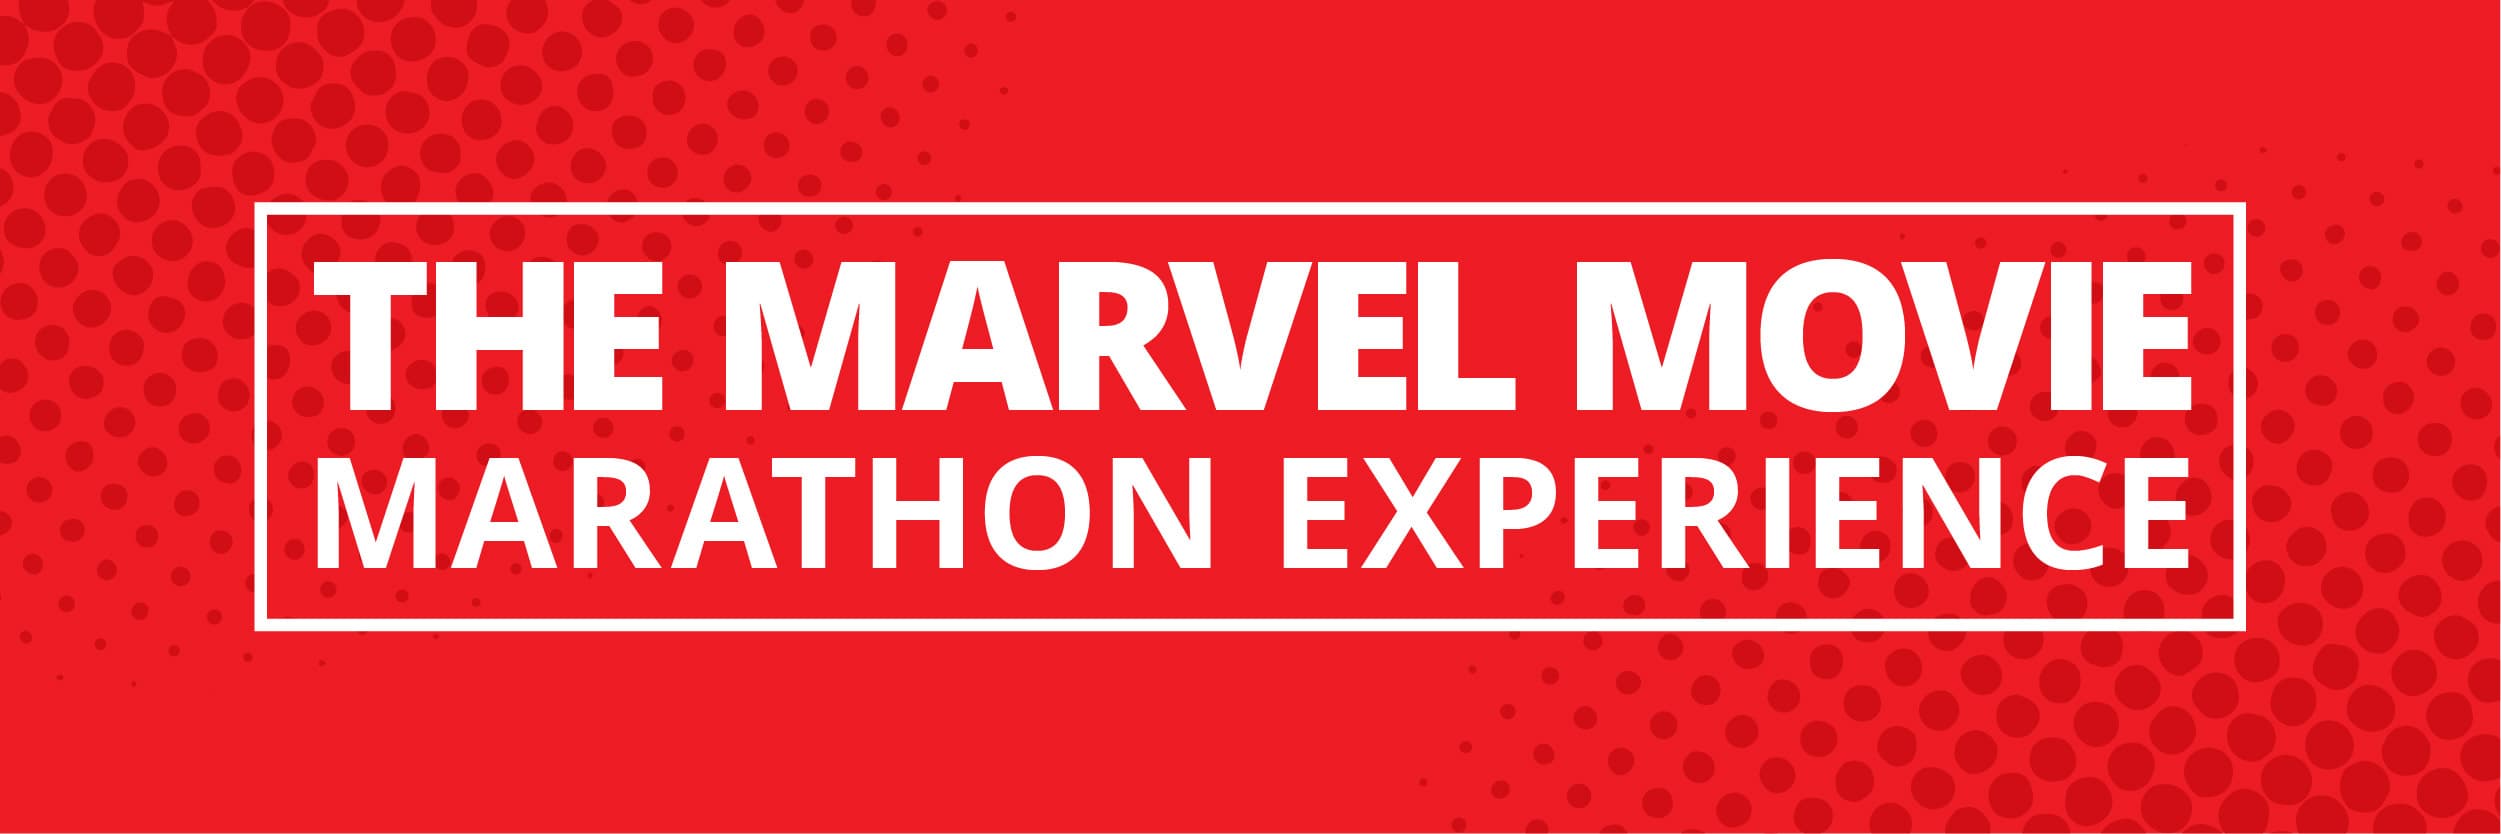 Marvel Movie Marathon Experience